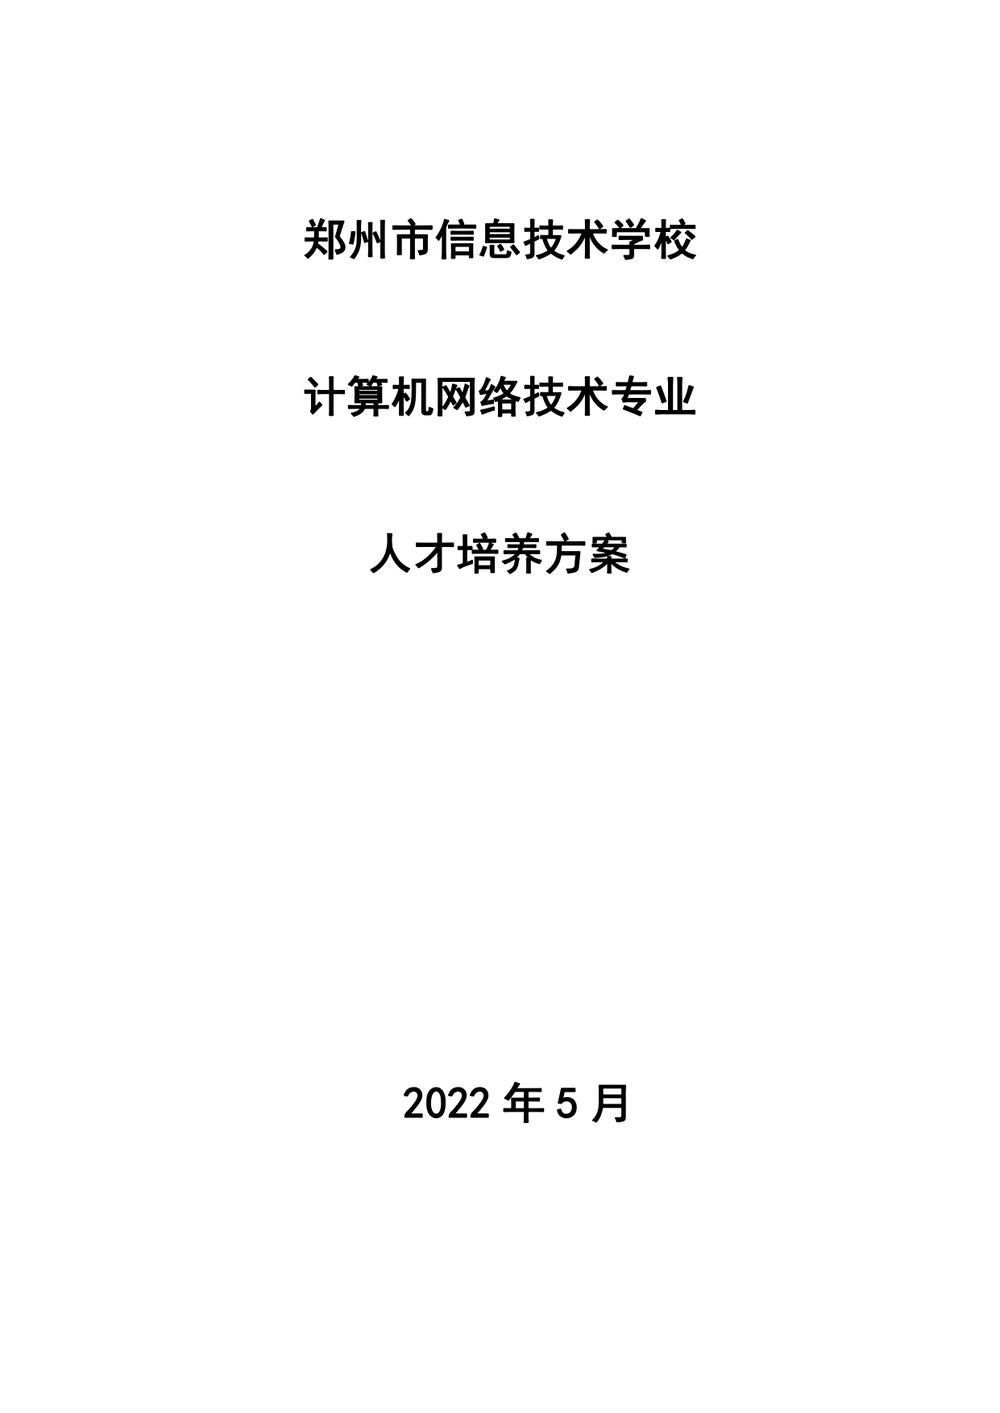 2_郑州市信息技术学校 - 计算机网络技术人才培养方案（09.04）(1)_page-0001